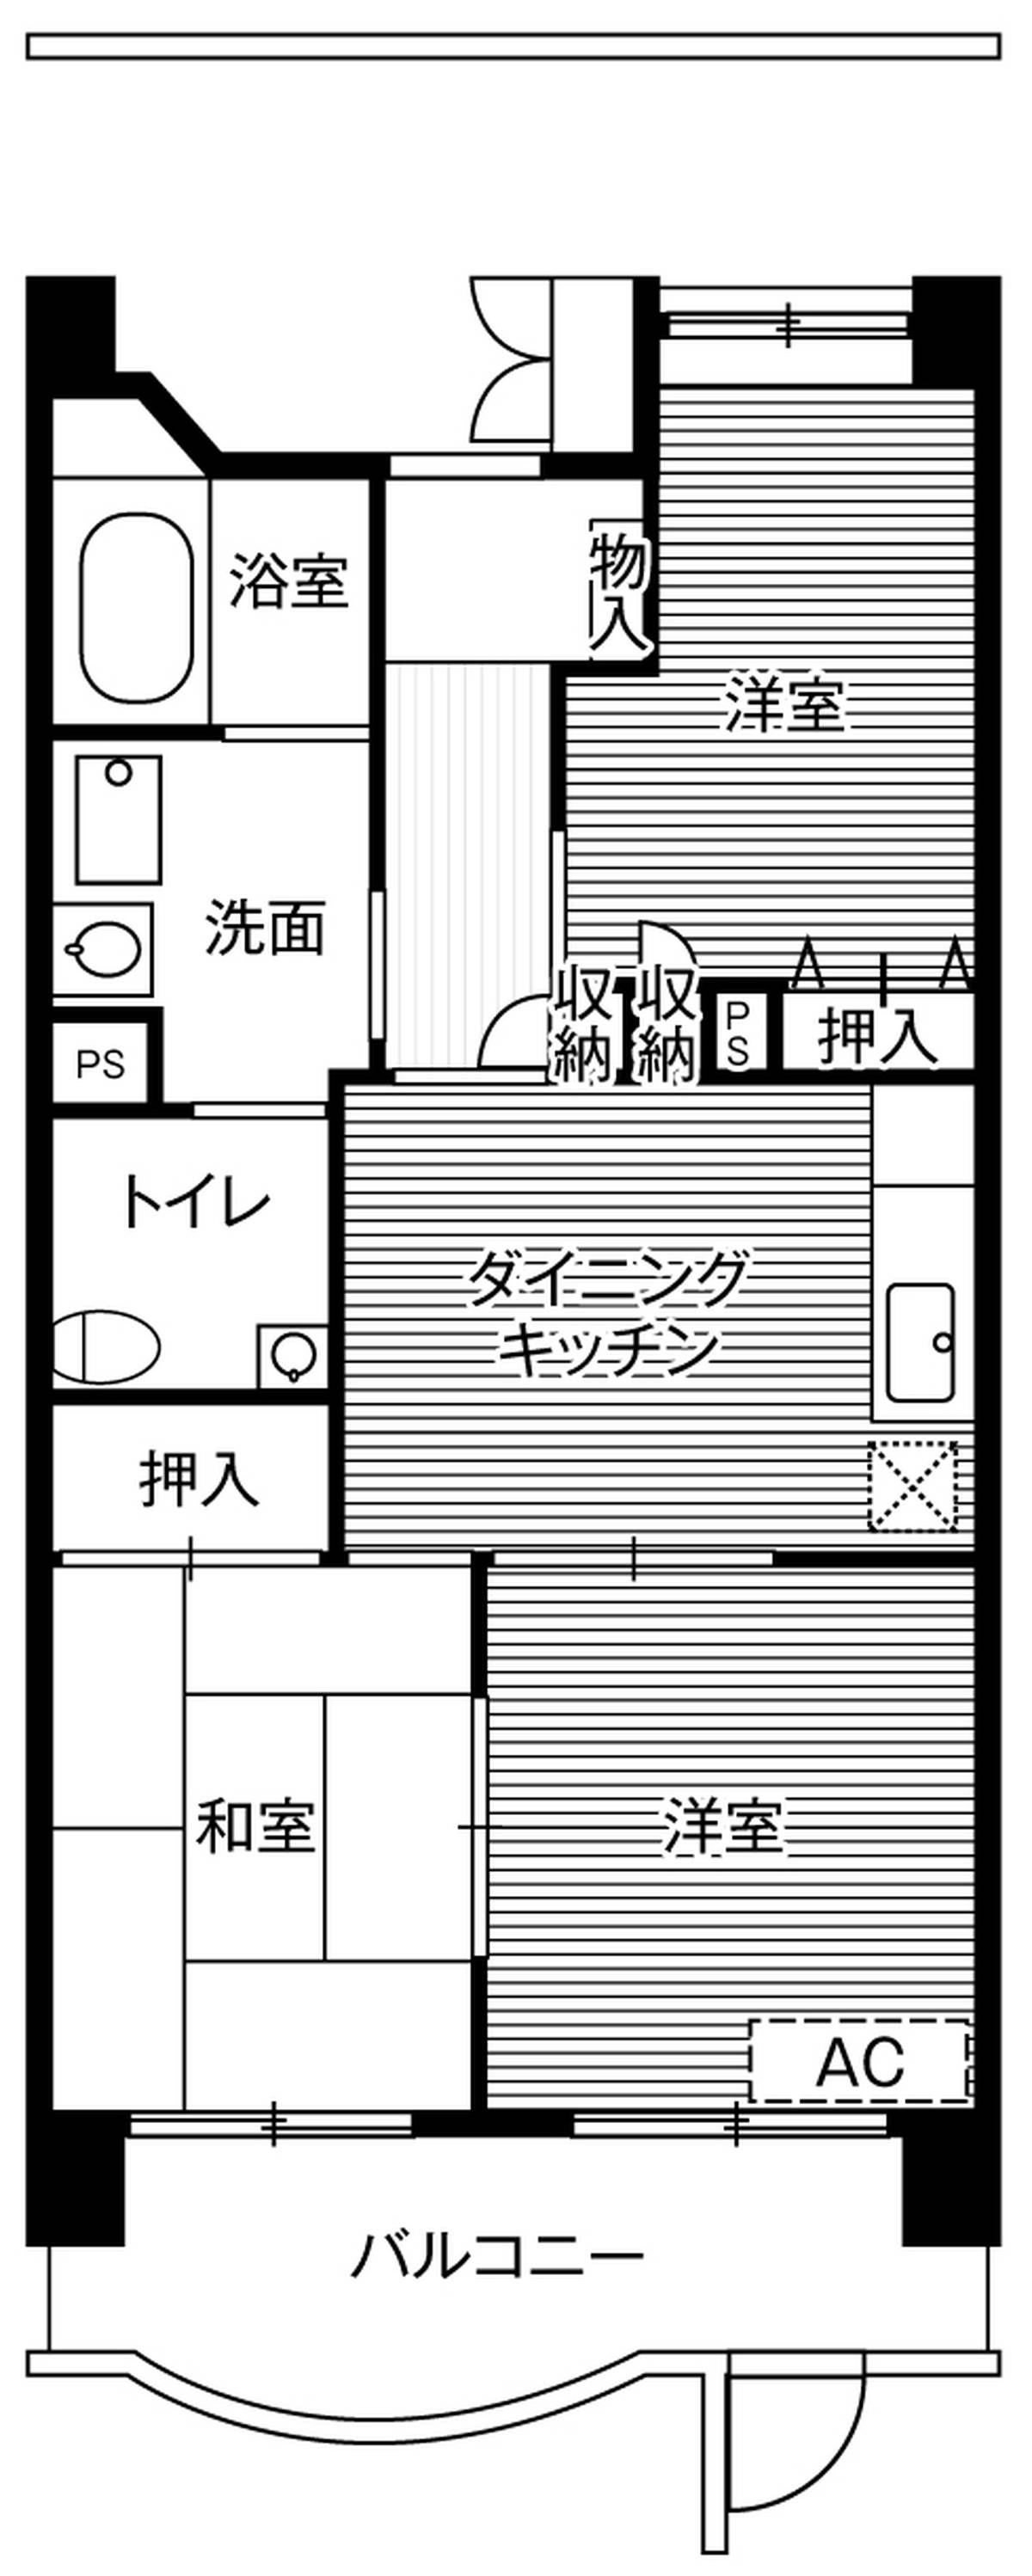 Sơ đồ phòng 2LDK của Village House Shiomi Tower ở Koto-ku